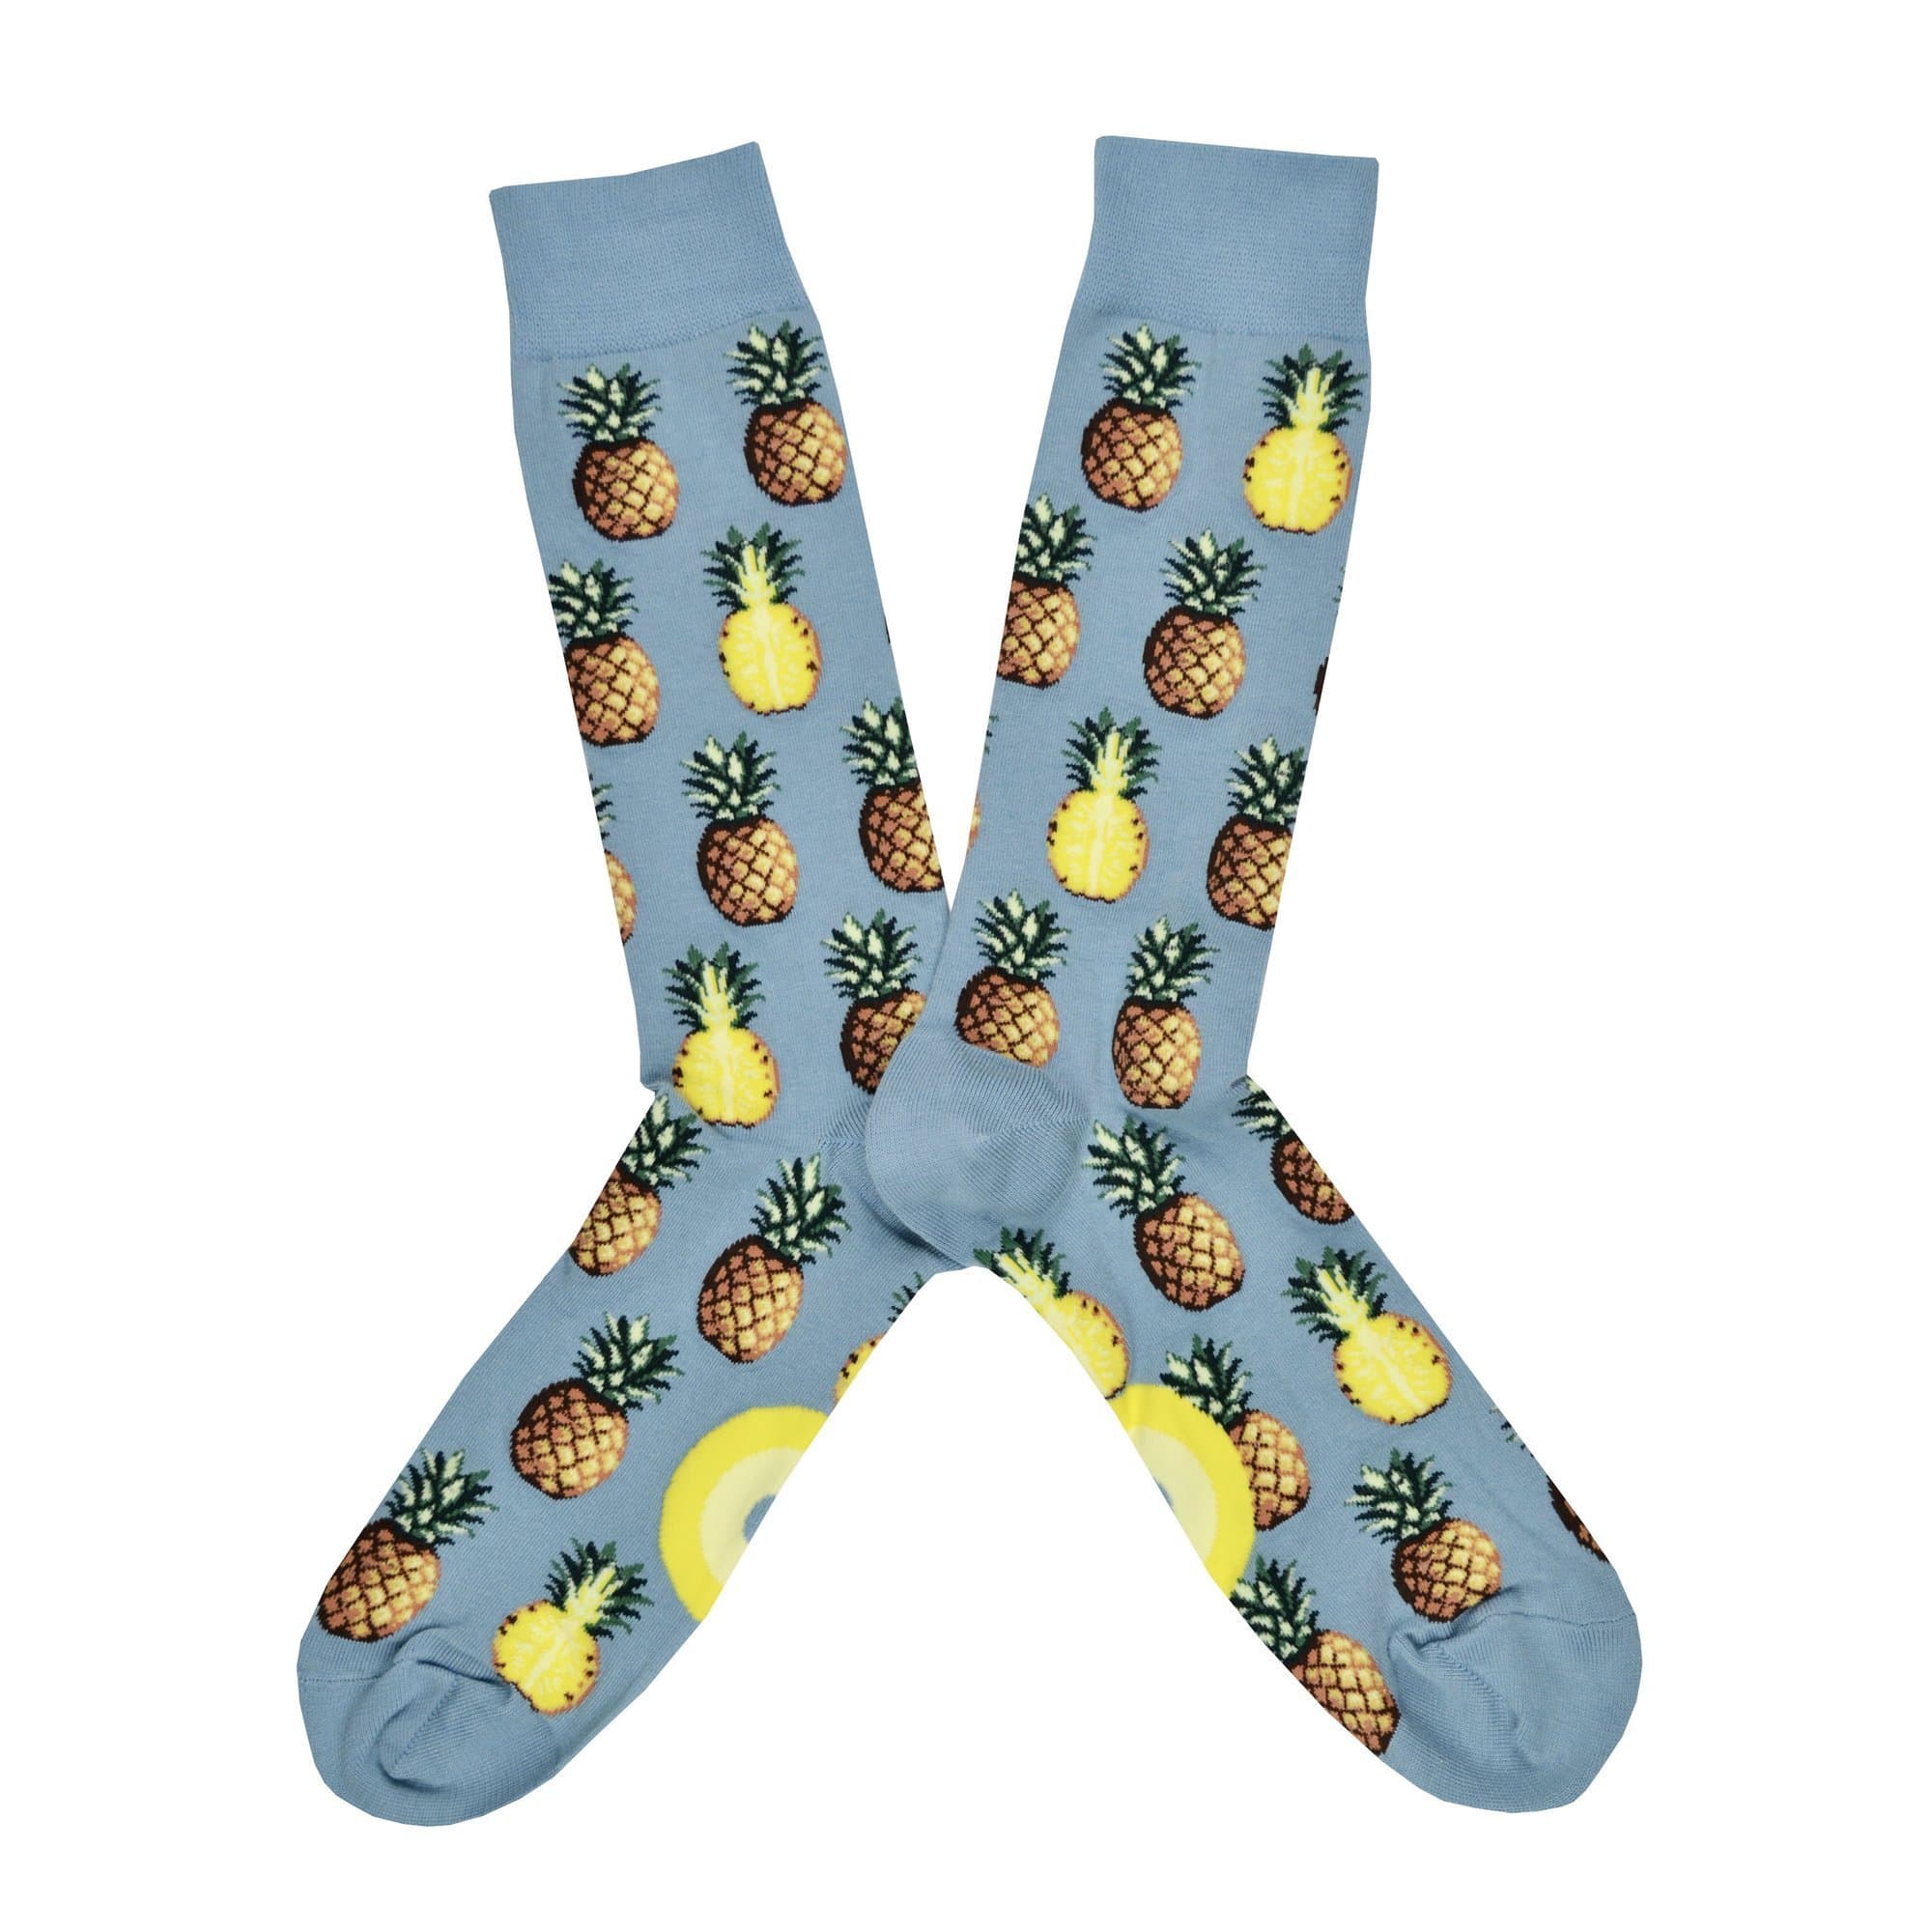 Pursuit of Pineapples – Crew Socks for Men - gray - John's Crazy Socks